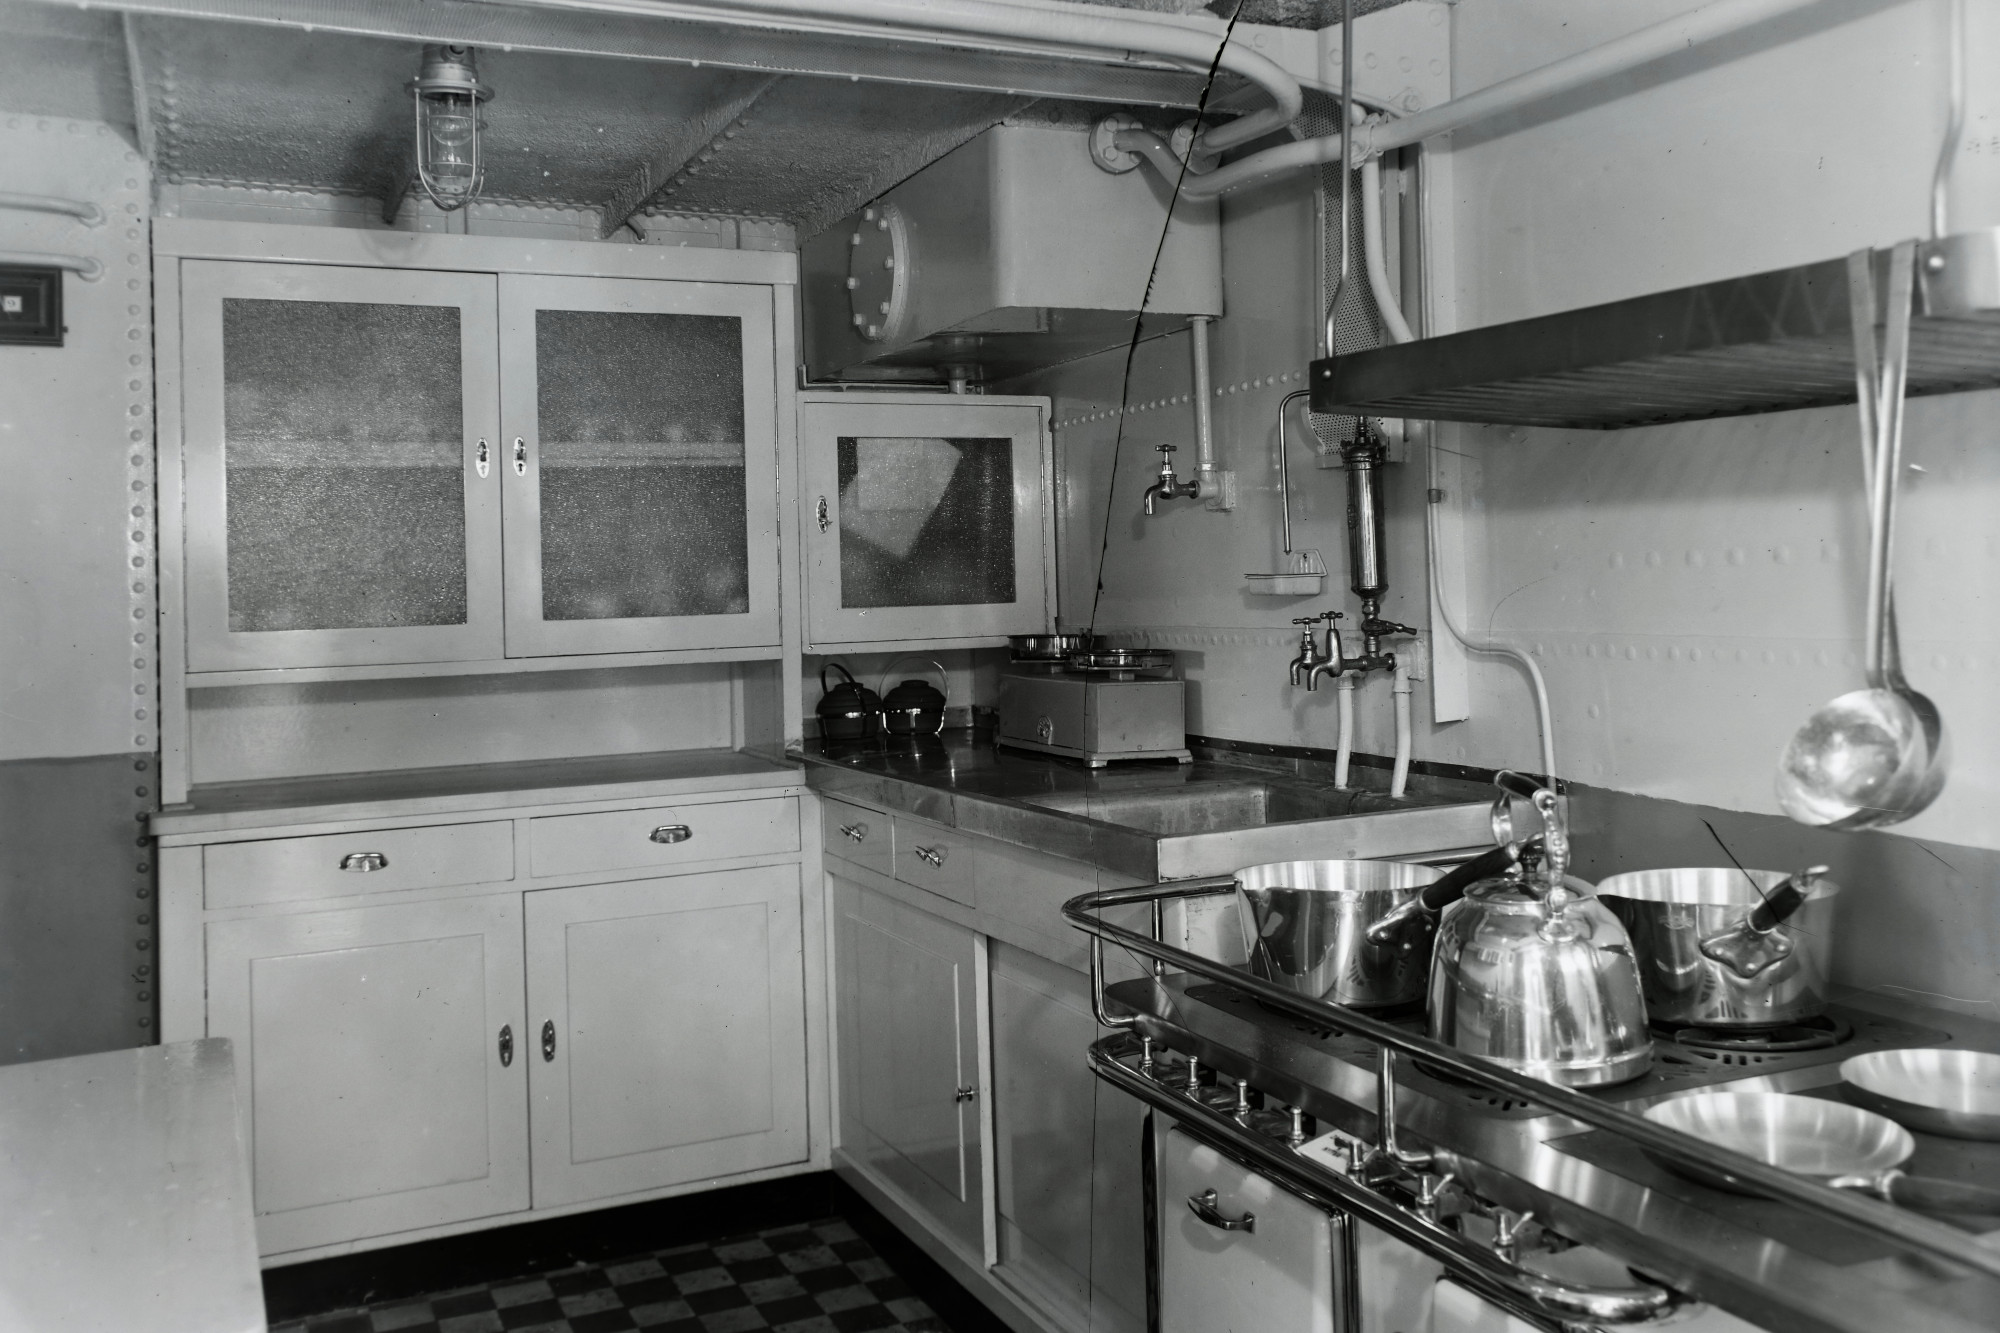 Az IIWC Danube Shell motoros tankhajó konyhája 1938-ból. Schütte akár innen is meríthetett volna ihletet